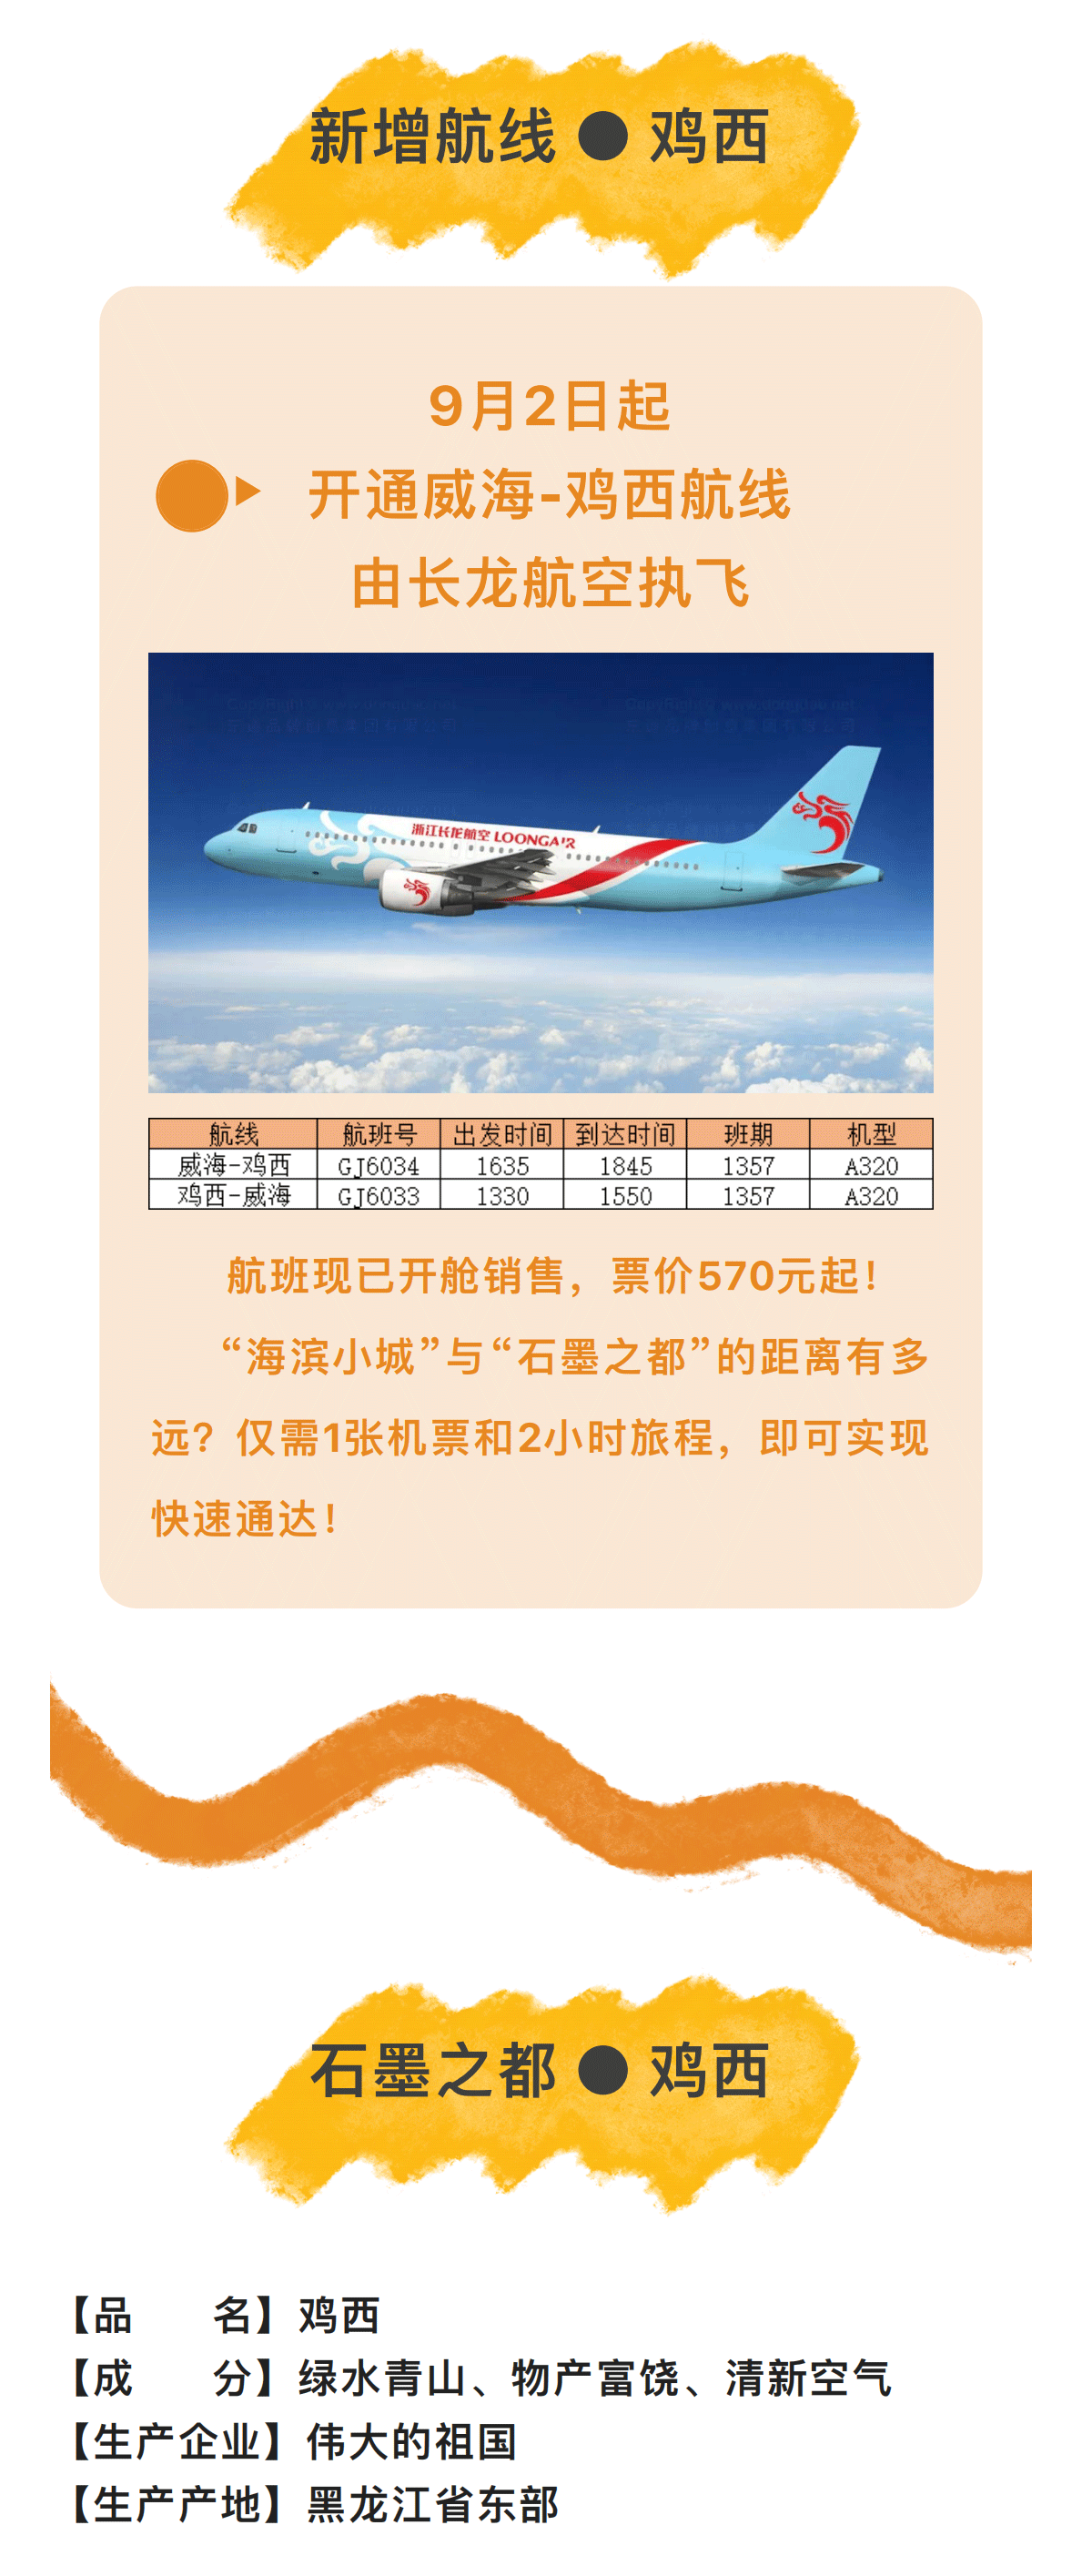 航班快讯--威海国际机场即将加密哈尔滨航线、开通鸡西航线_00_03.png